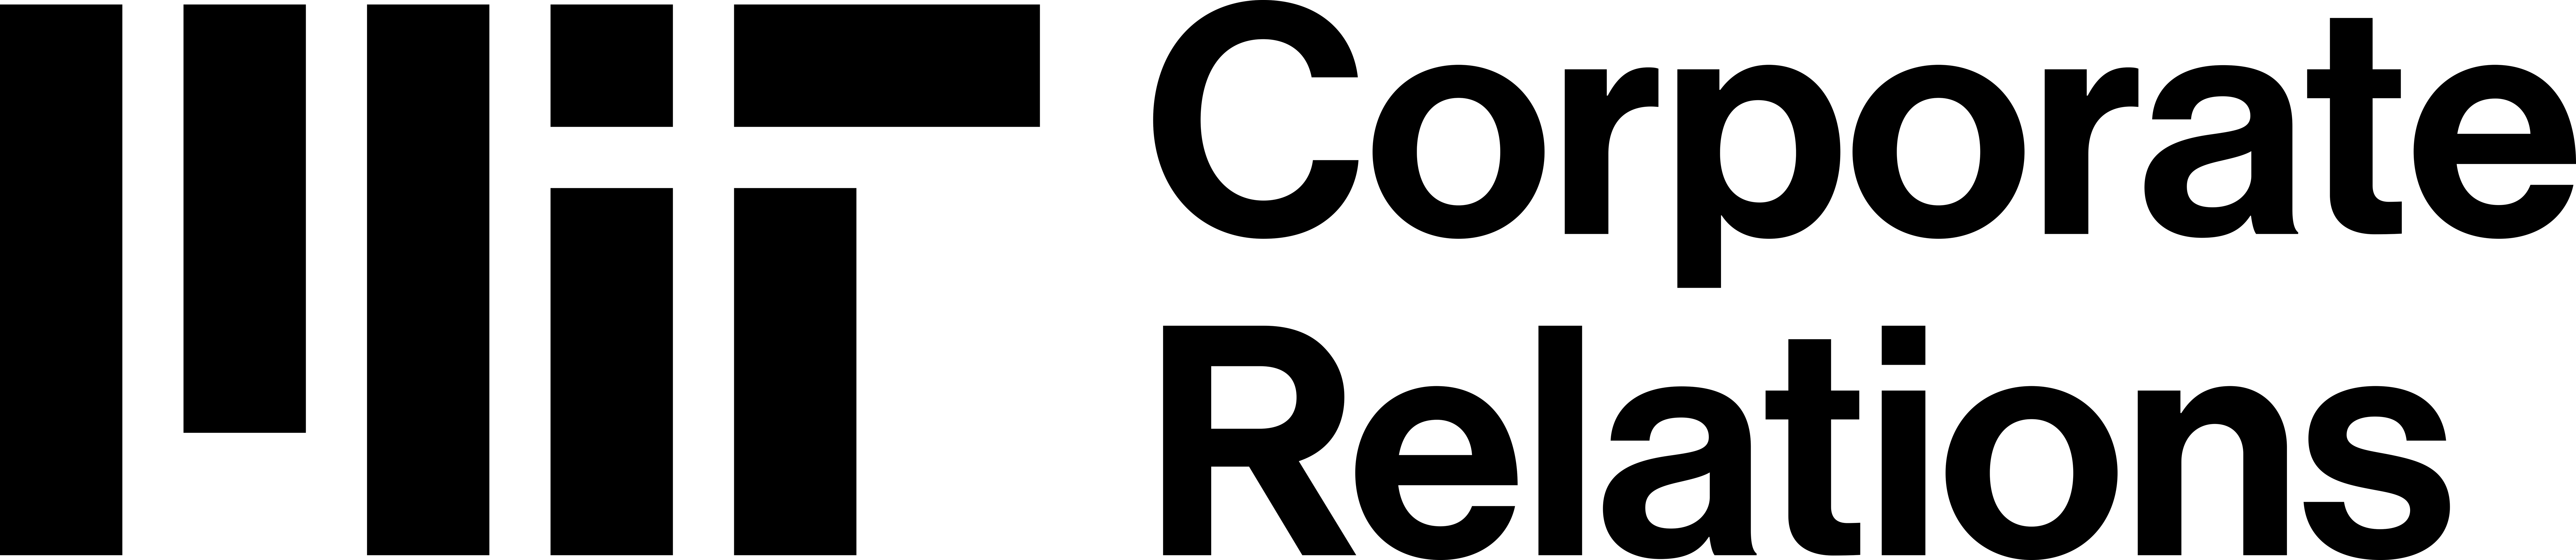 MIT OCR Logo